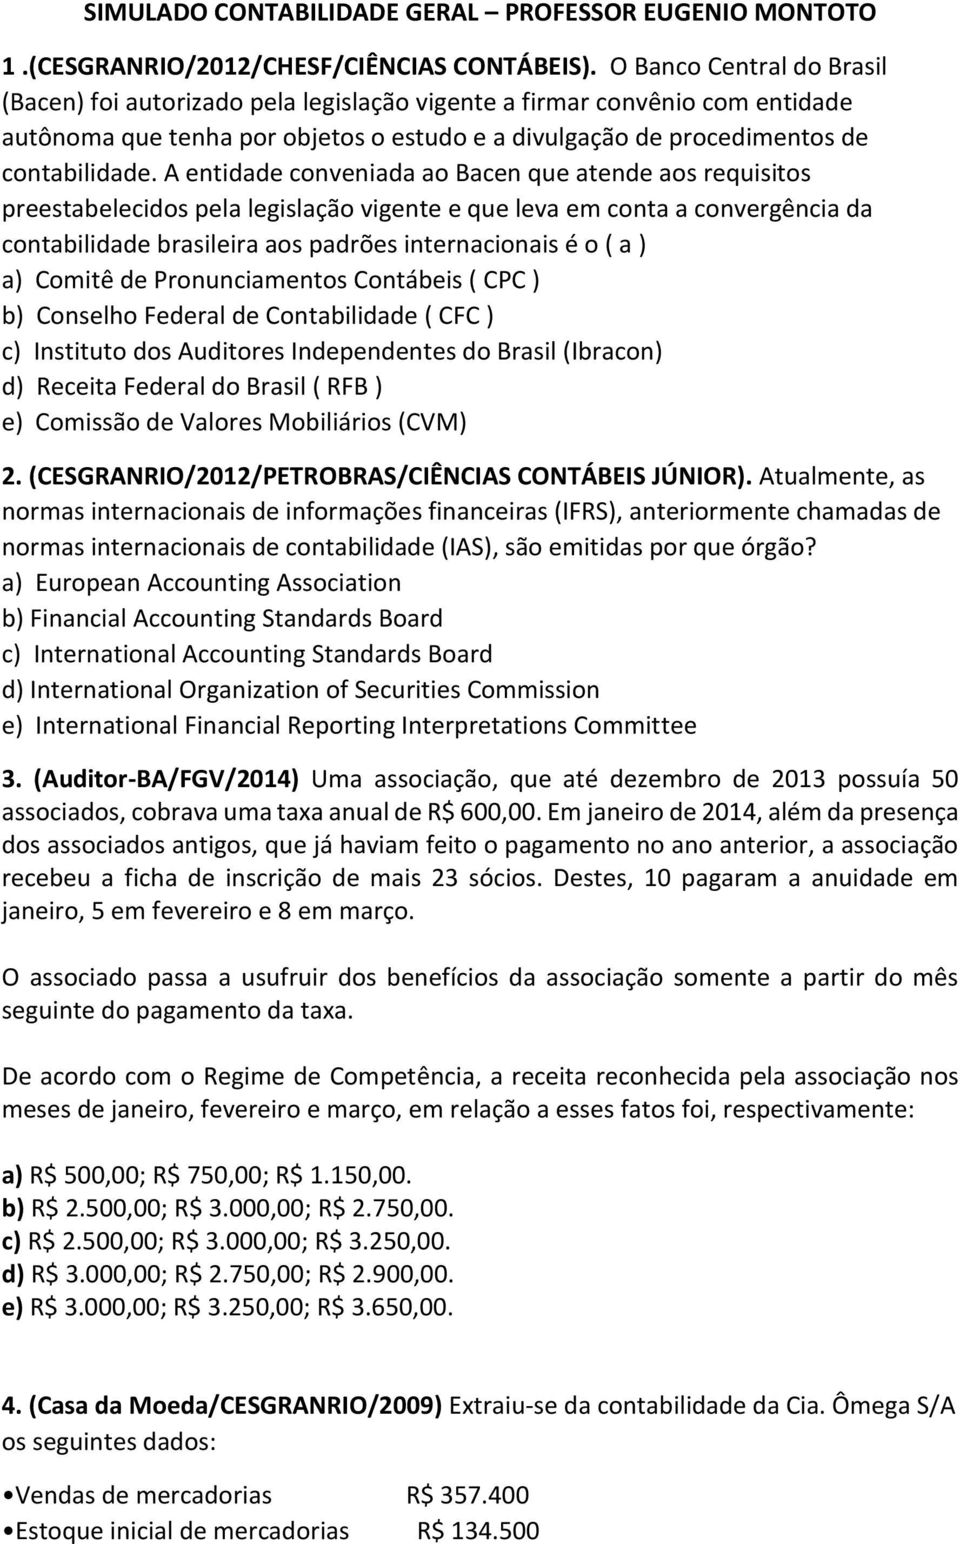 A entidade conveniada ao Bacen que atende aos requisitos preestabelecidos pela legislação vigente e que leva em conta a convergência da contabilidade brasileira aos padrões internacionais é o ( a )